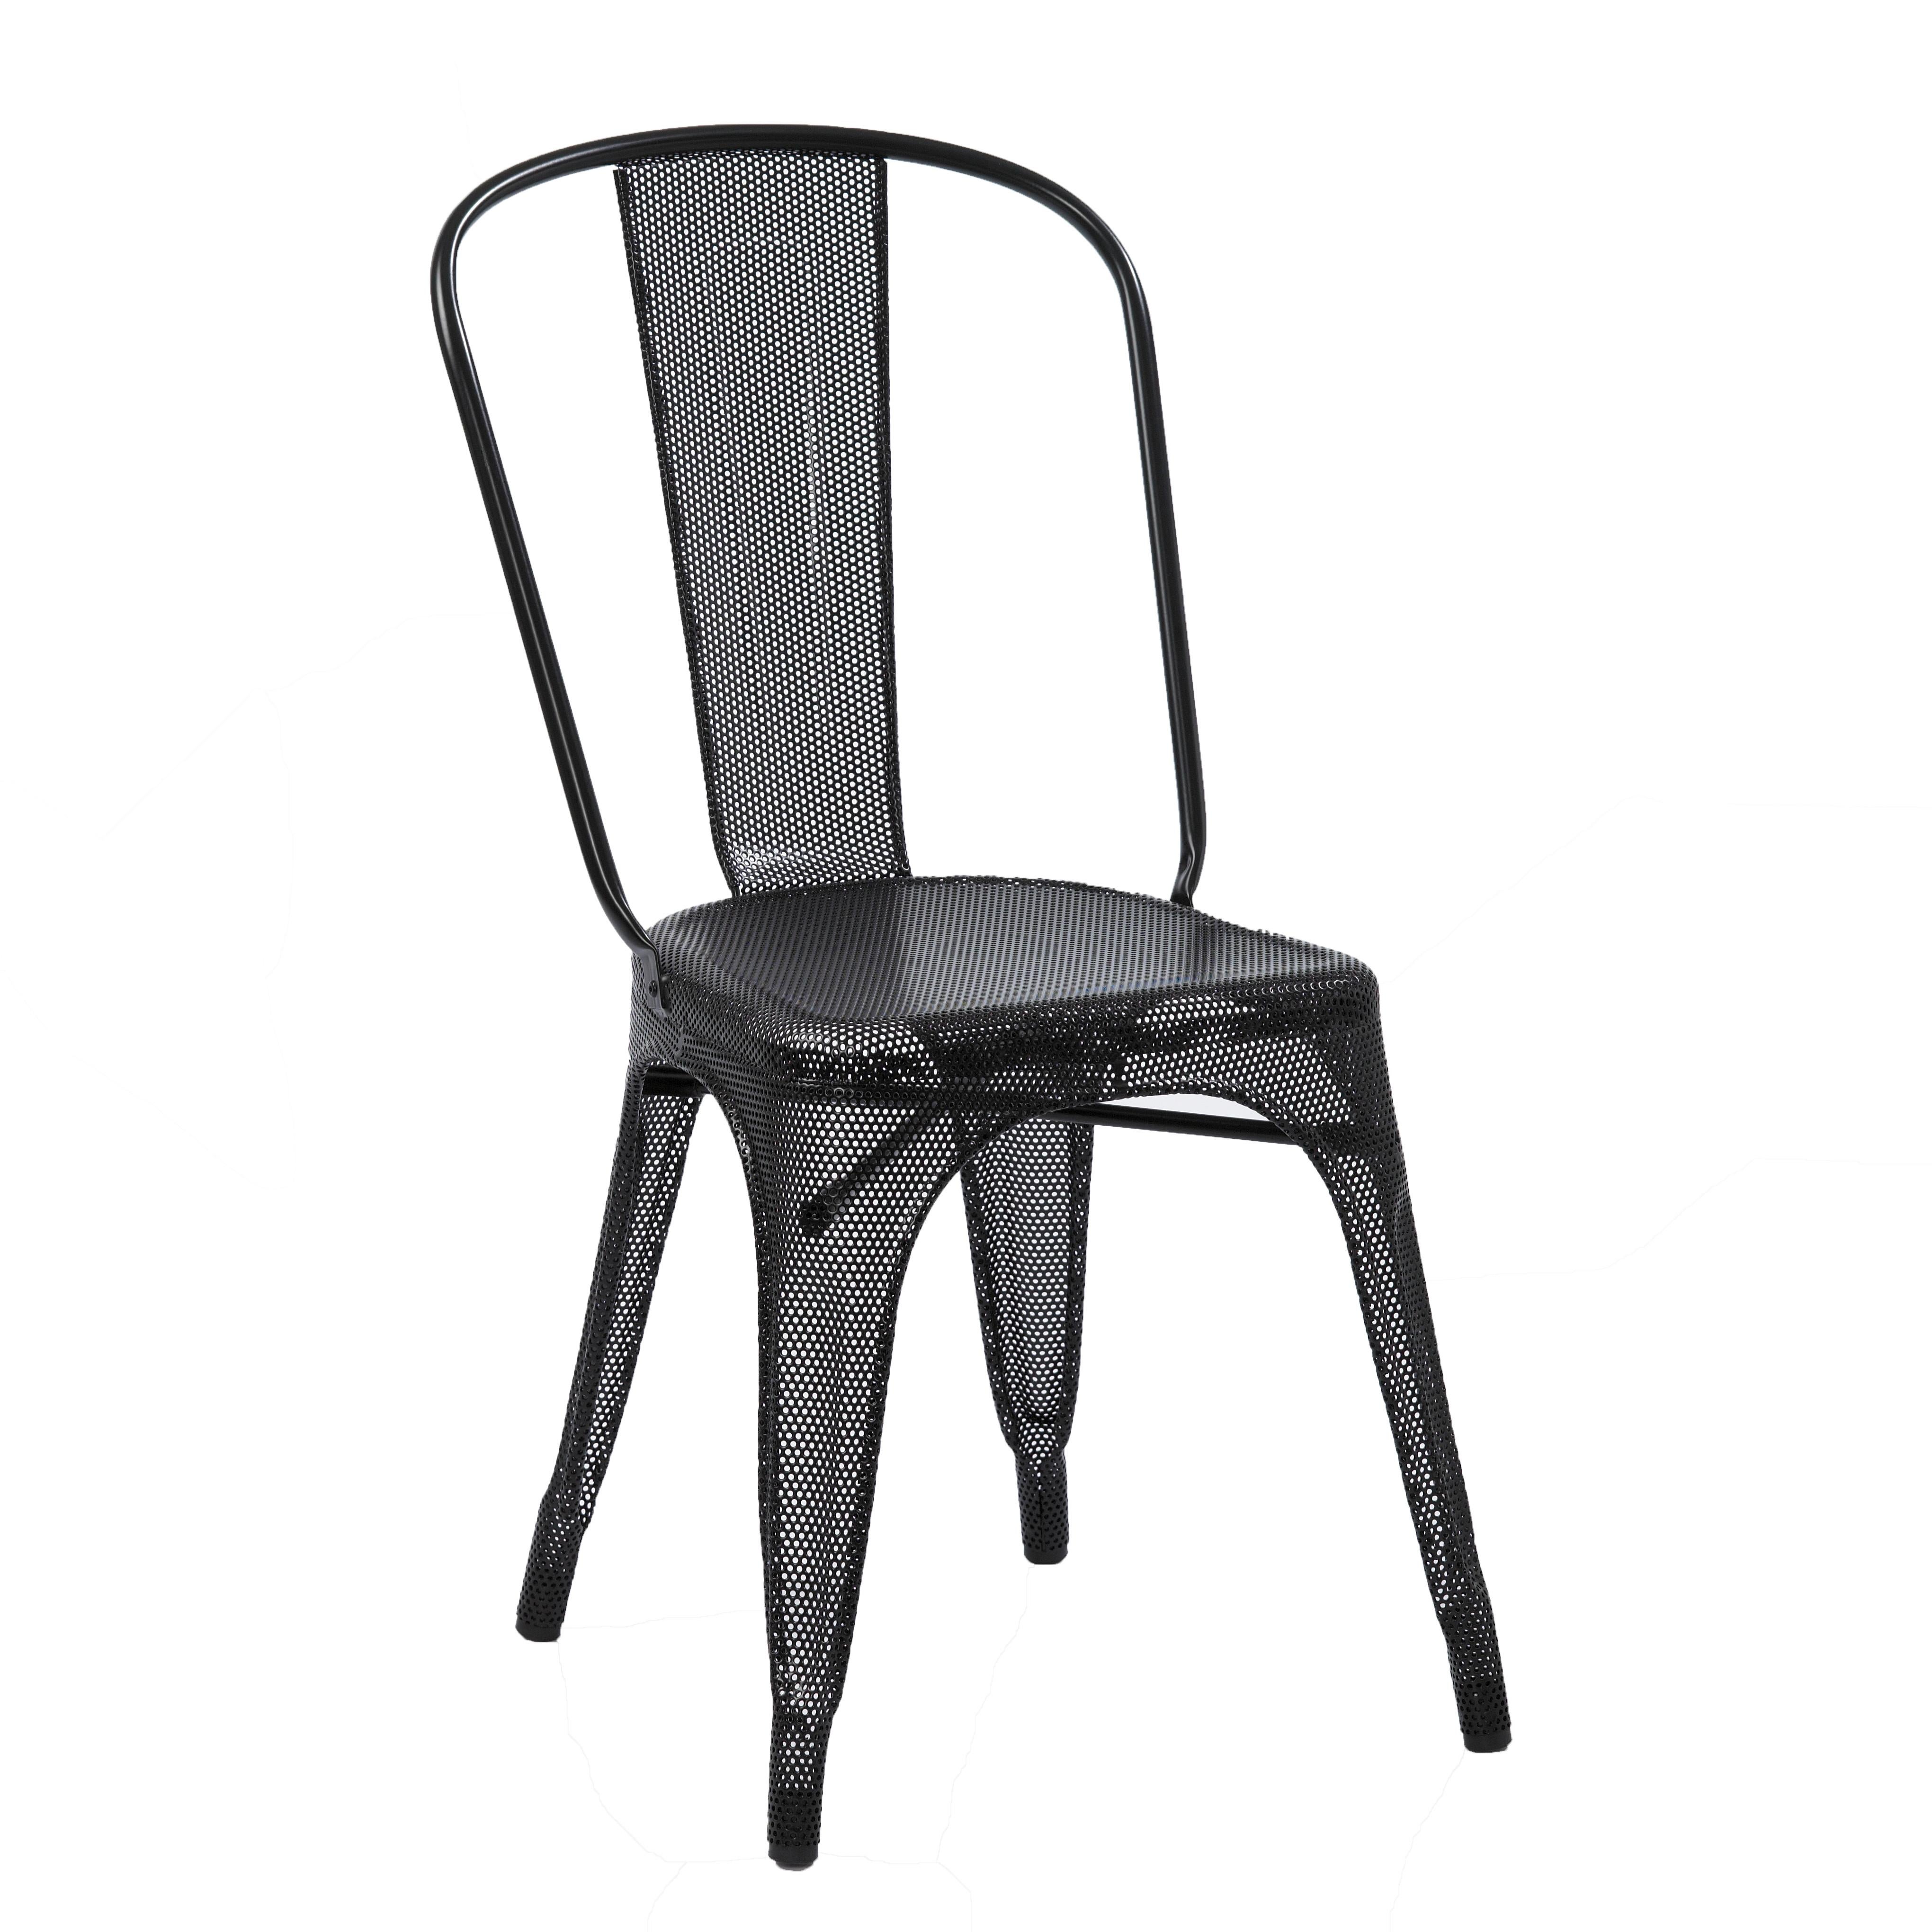 Der 1927 von Xavier Pauchard entworfene Stuhl ist eine Ikone des Industriedesigns. Es ist Teil der Sammlungen des Vitra Museums, des Moma, des Centre Pompidou sowie der Villa Savoye des berühmten Architekten Le Corbusier. Der A-Stuhl ist in